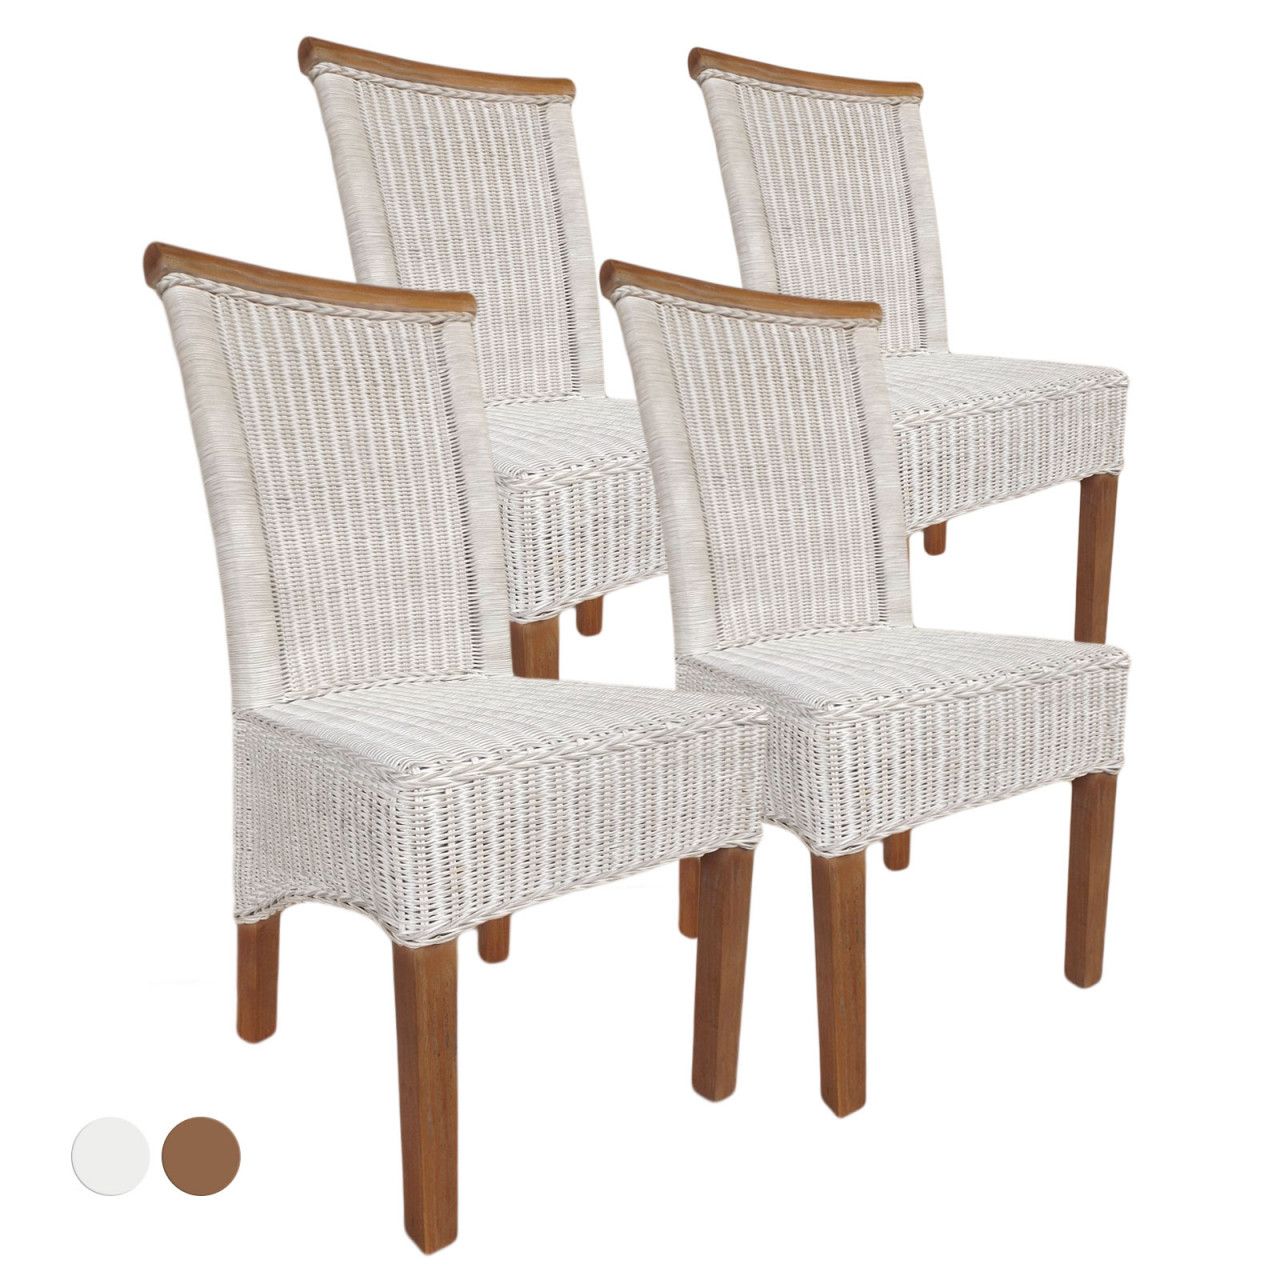 Esszimmer Stühle Set Rattanstühle Perth 4 Stück weiß Esstisch Stühle Korbstühle nachhaltig ohne Sitzkissen